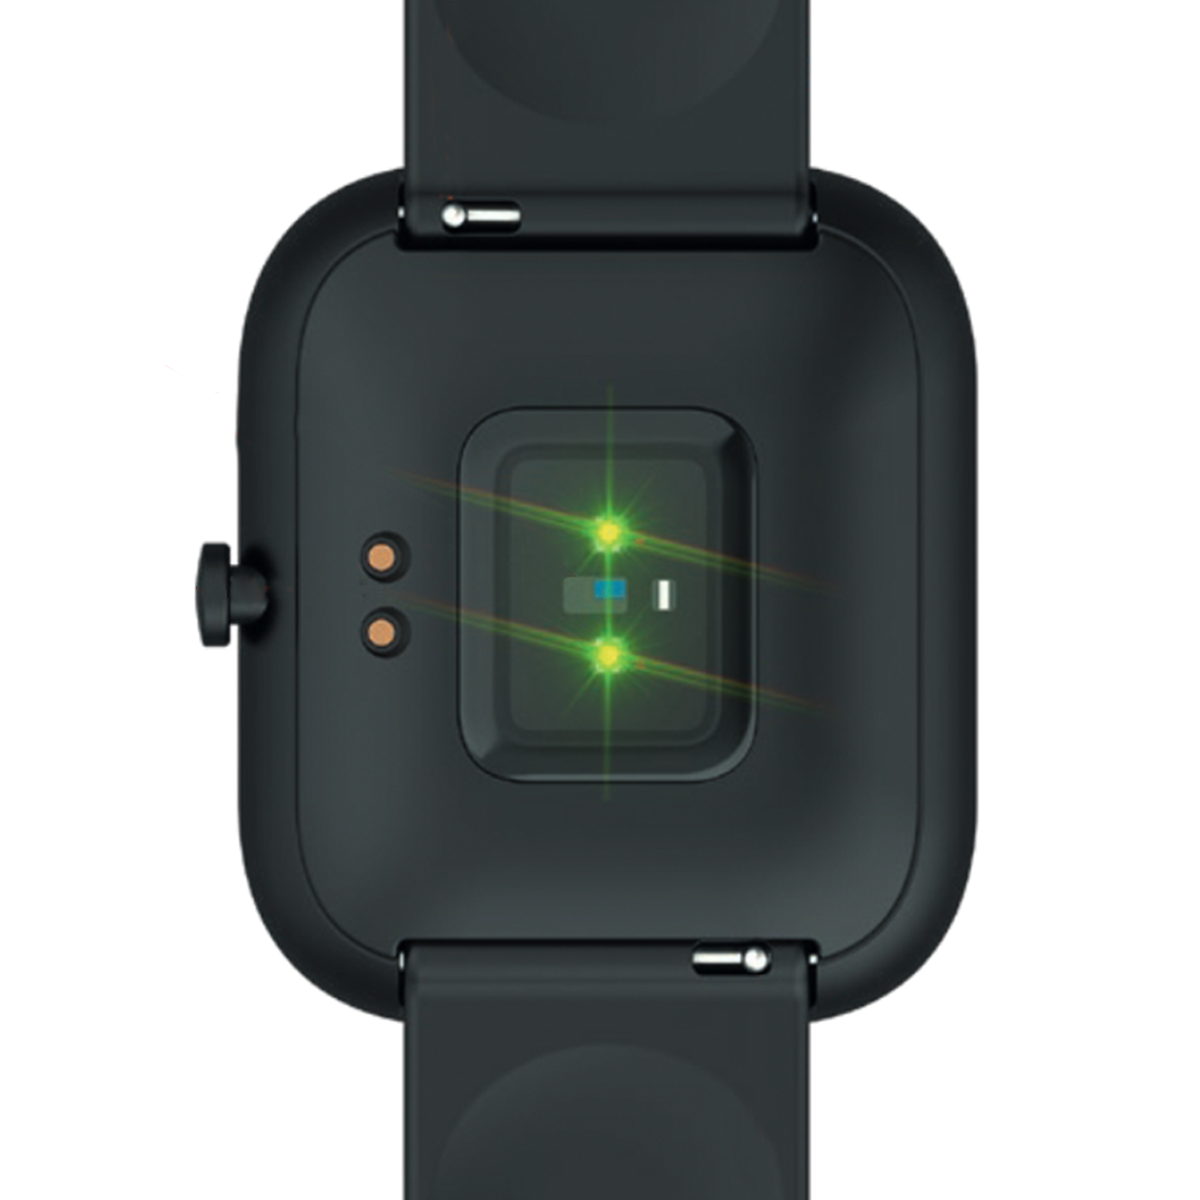 MIXX Watch 3 Smartwatch